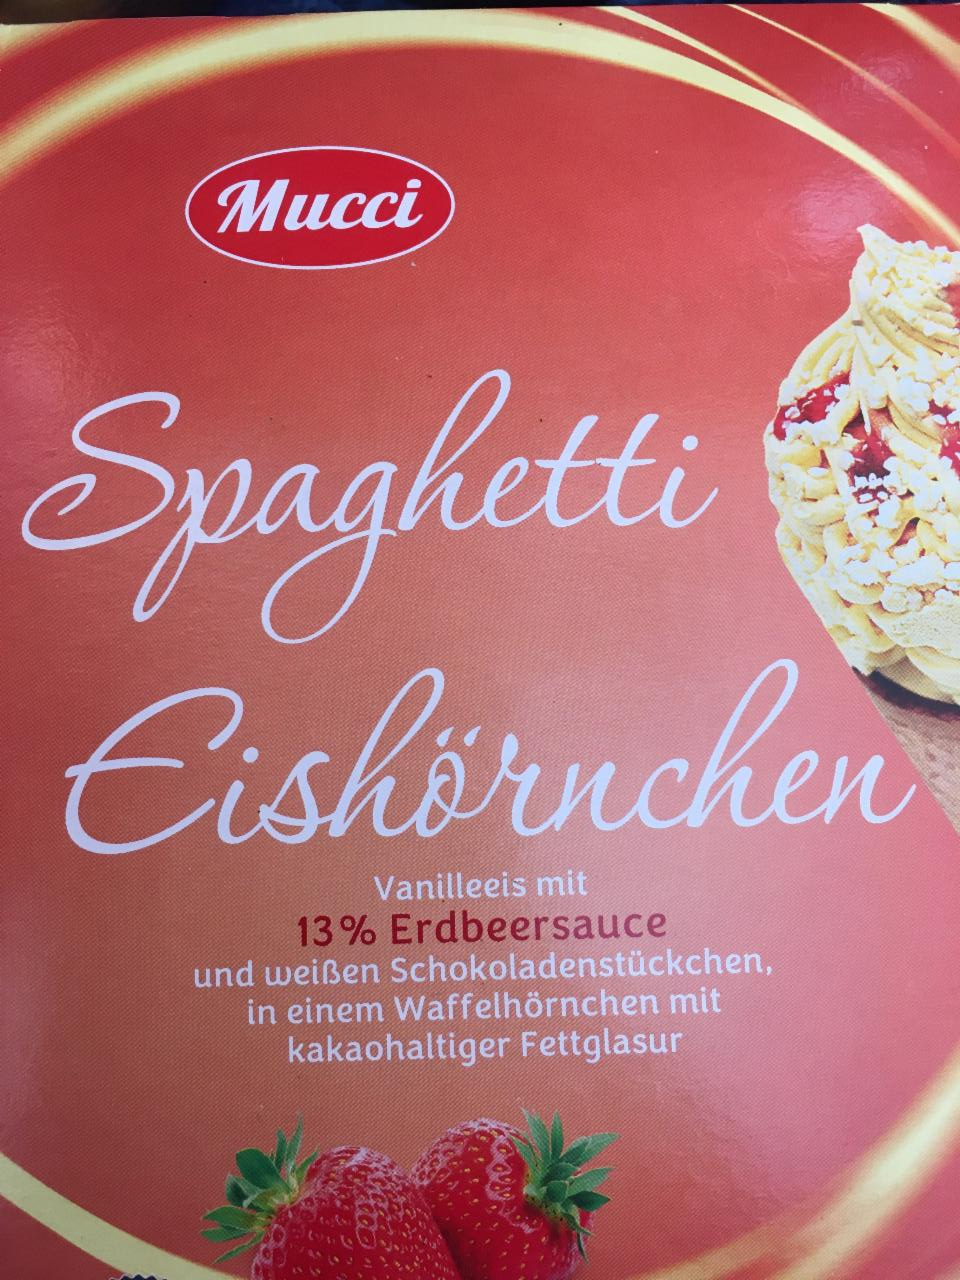 Fotografie - Spaghetti Eishörnchen Vanilleeis mit 13% Erdbeersauce Mucci